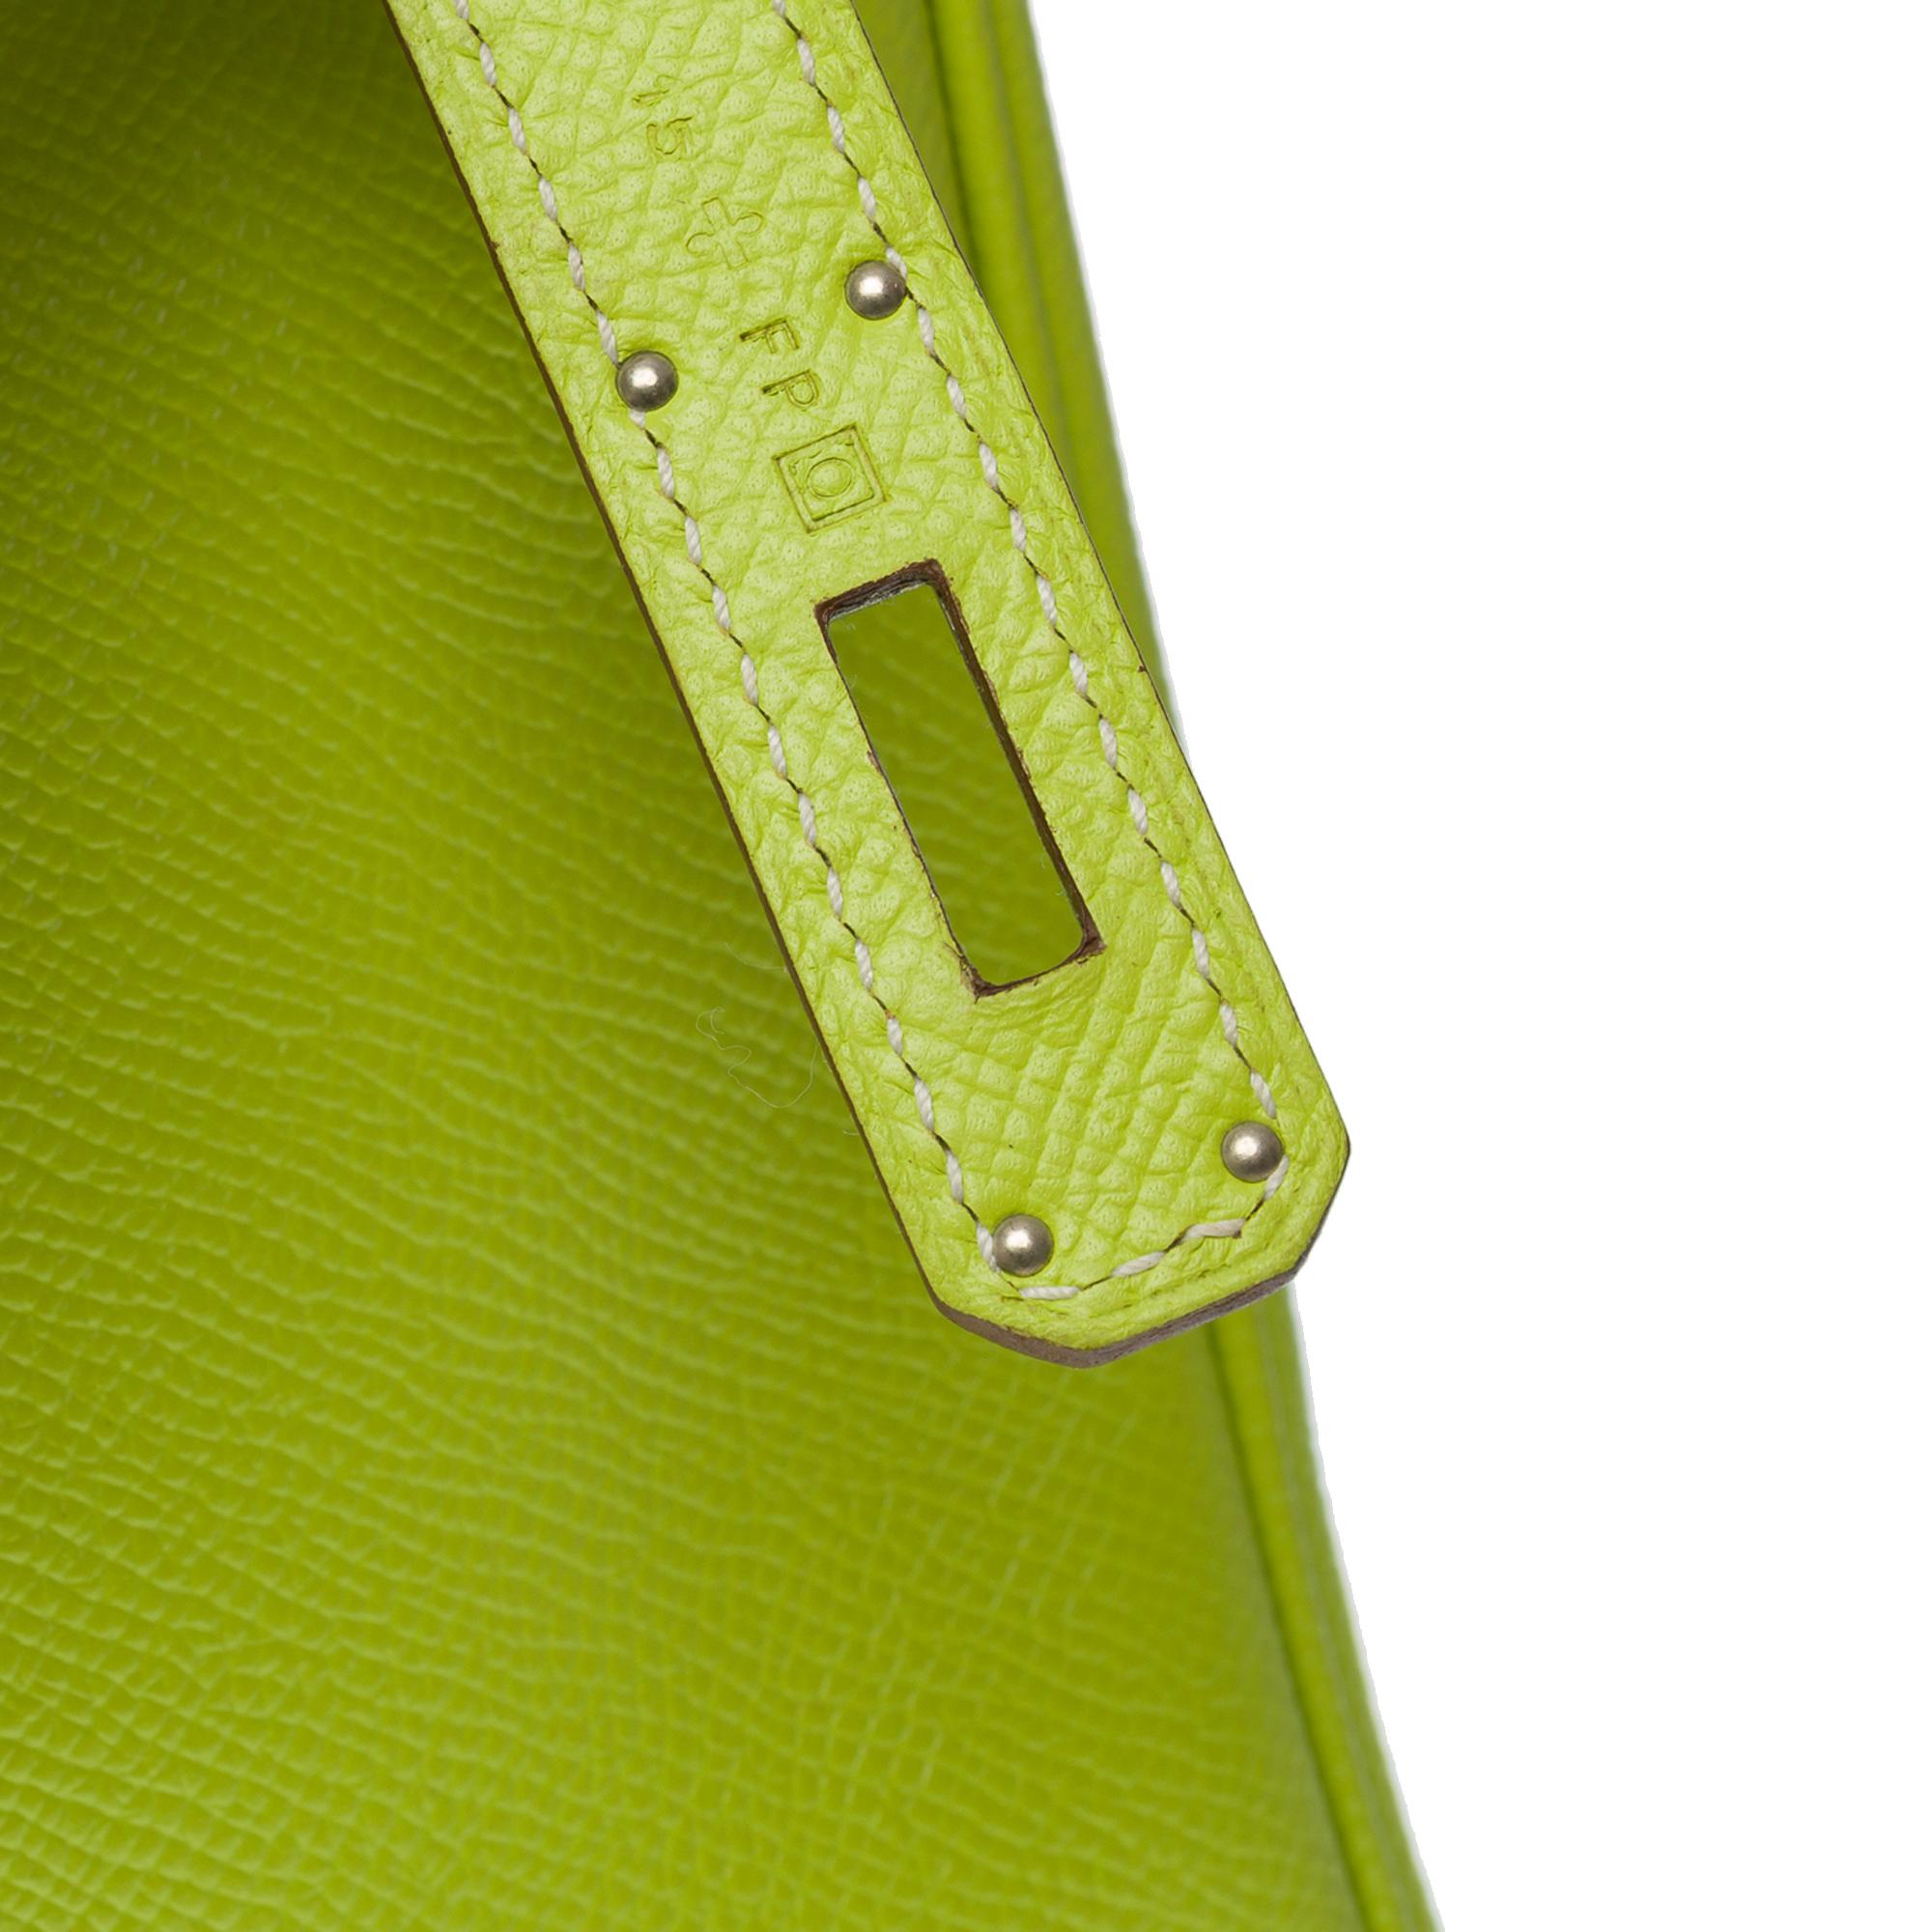 Candy limited edition Hermès Birkin 35 handbag in Kiwi Green epsom leather, SHW 4